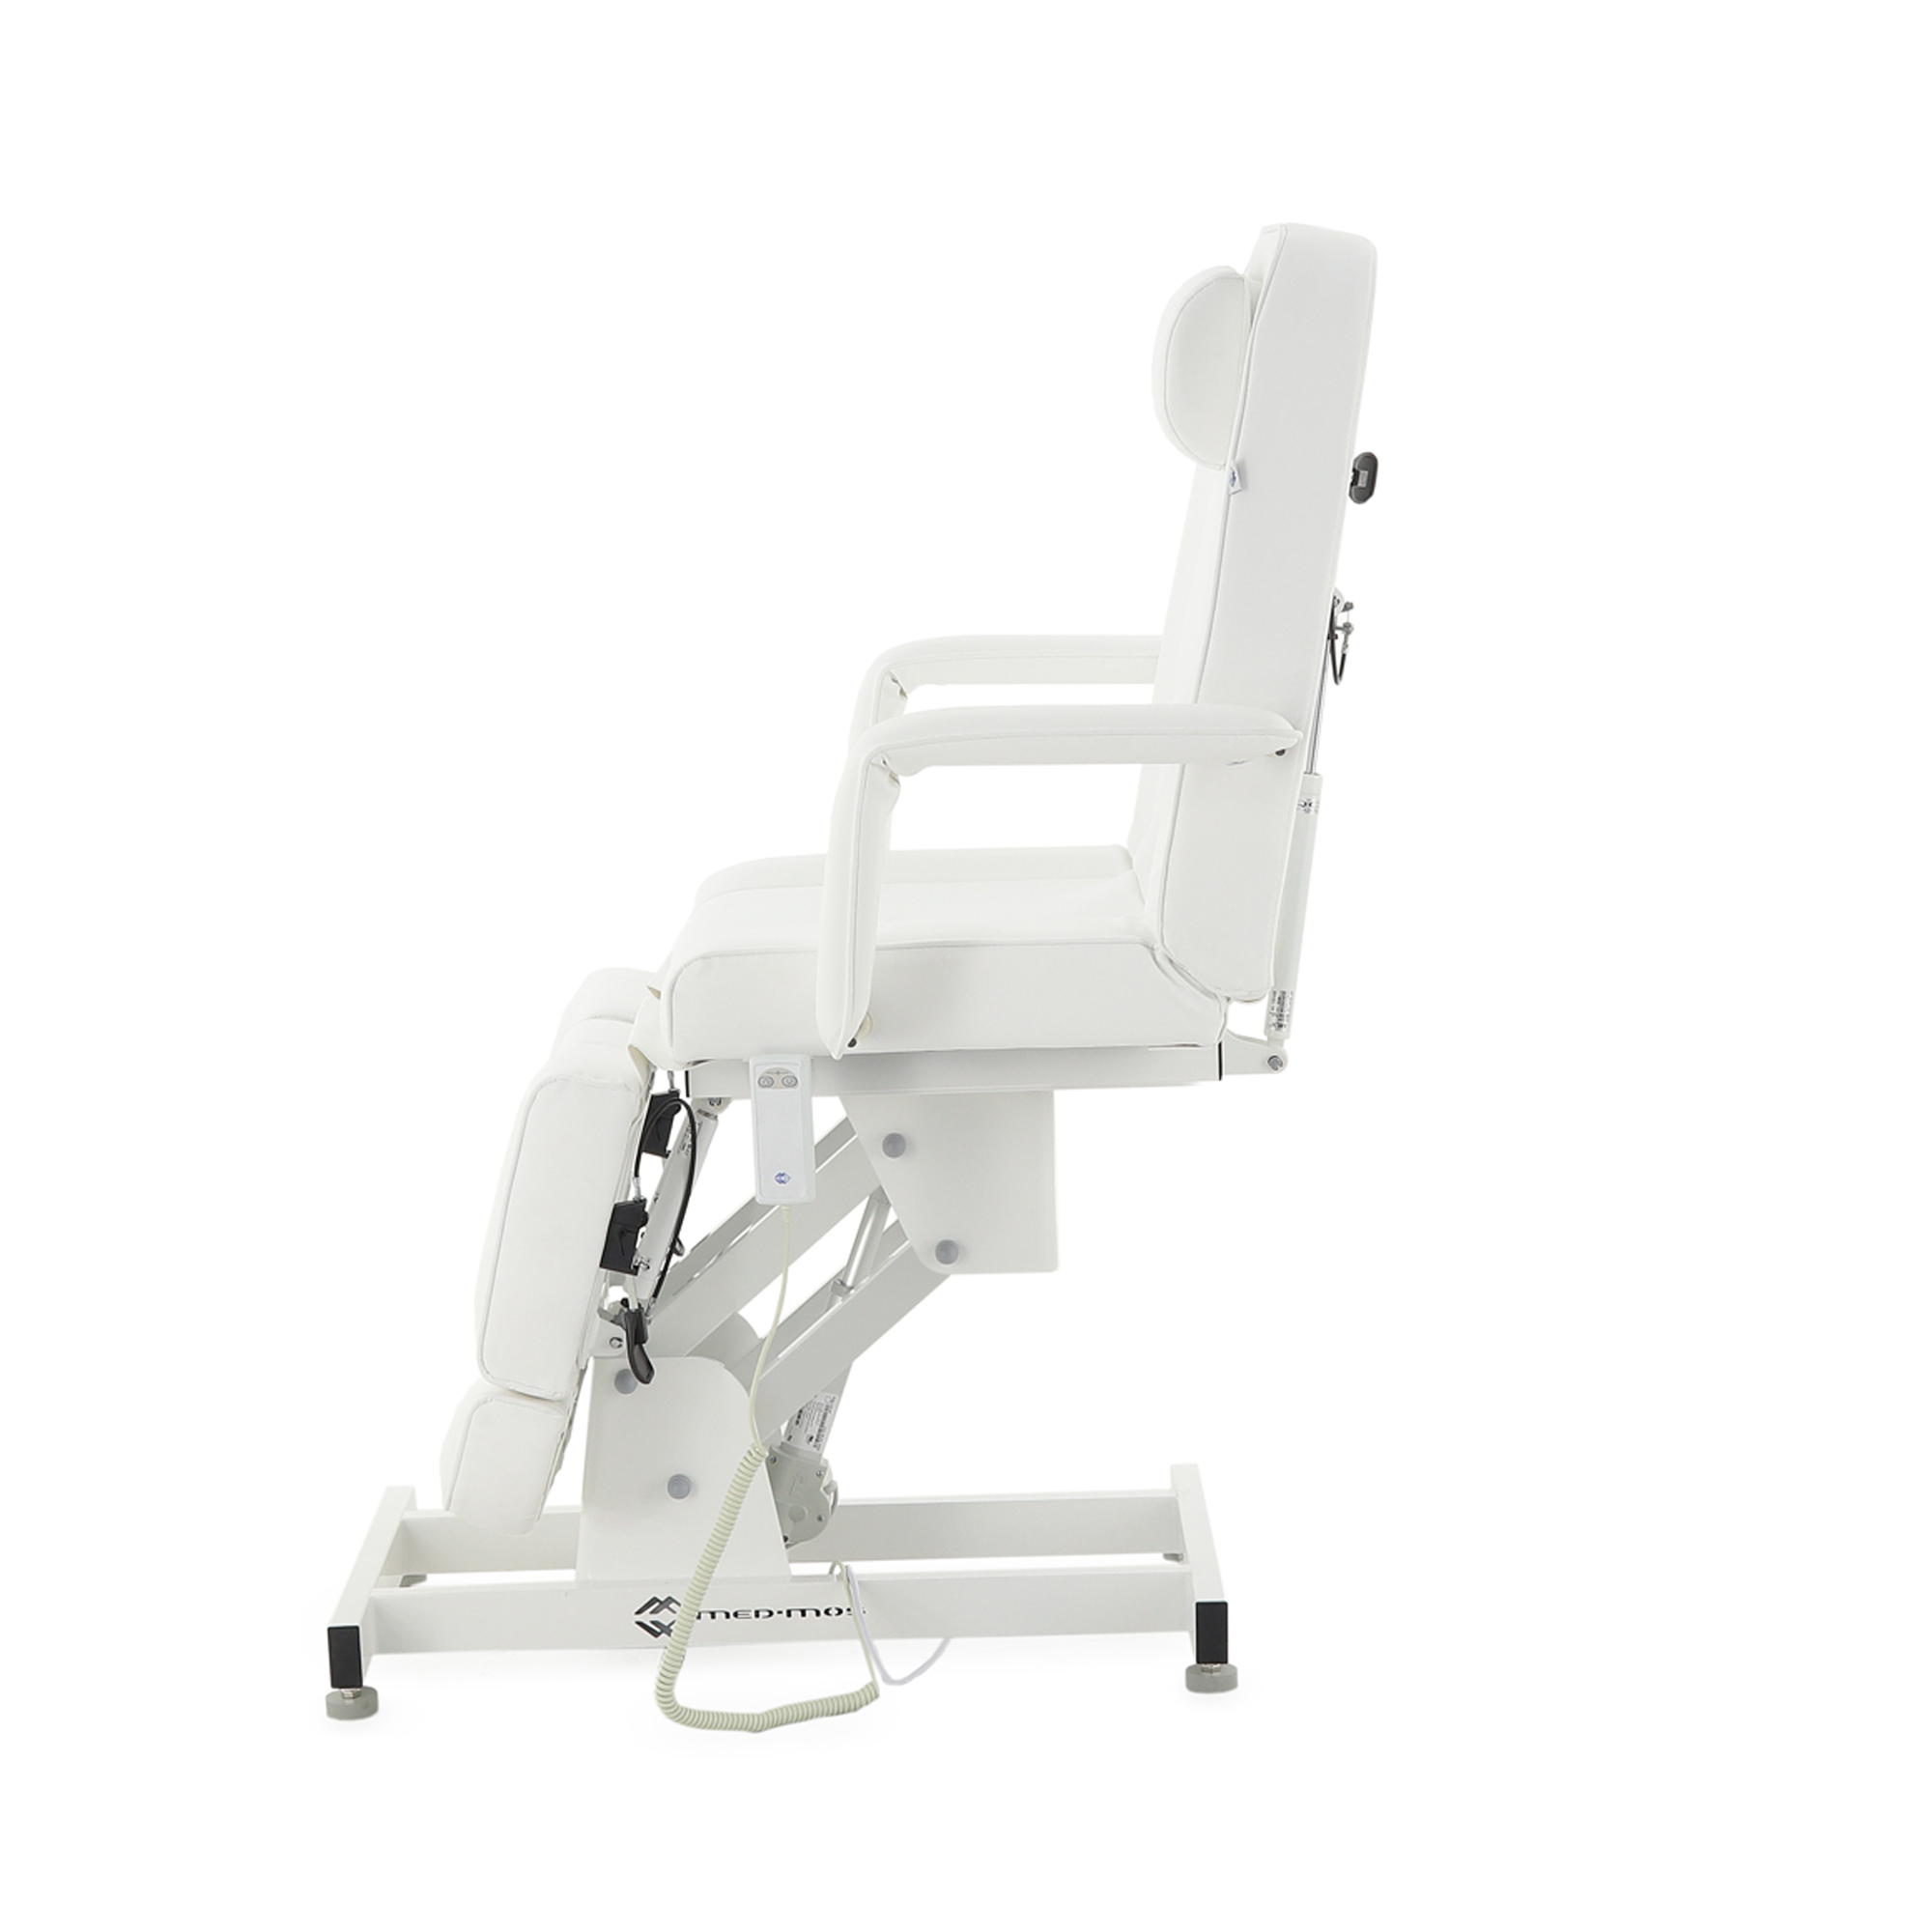 Педикюрное кресло электрическое ММКК-1 (КО-171.01) - 6 